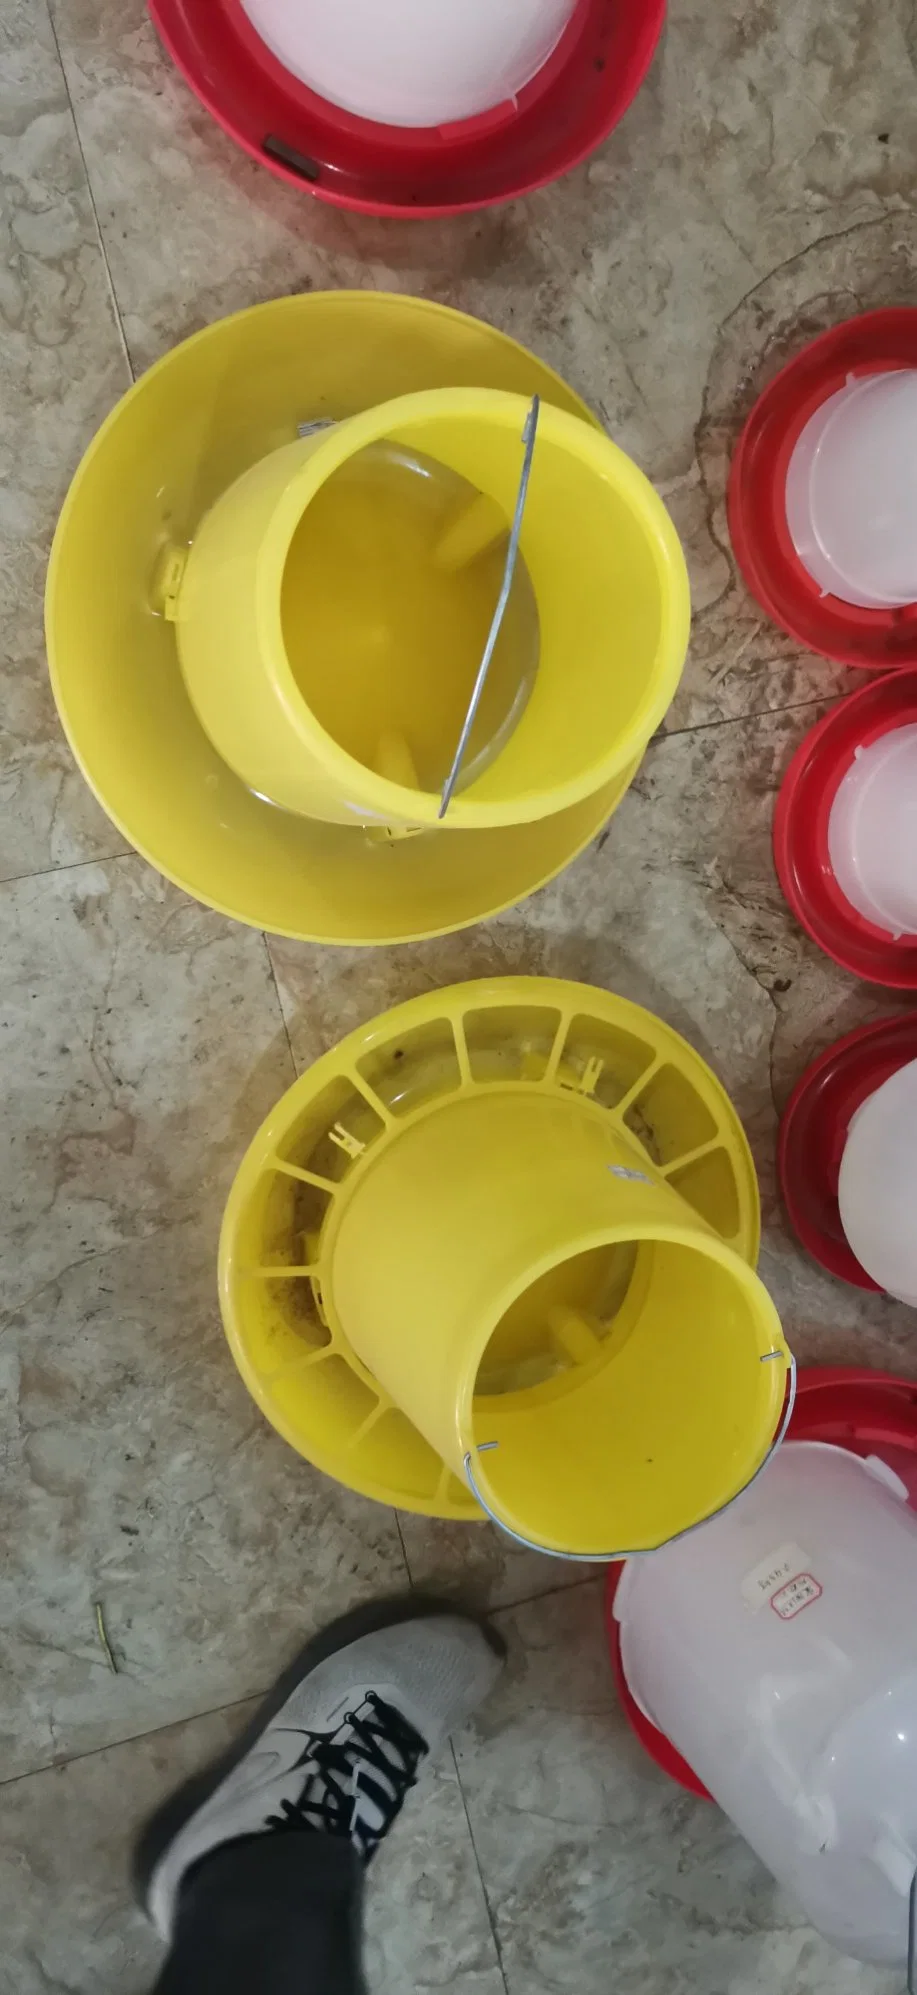 Convenient to Add Water Plastic Drinking System Chicken Water Bucket